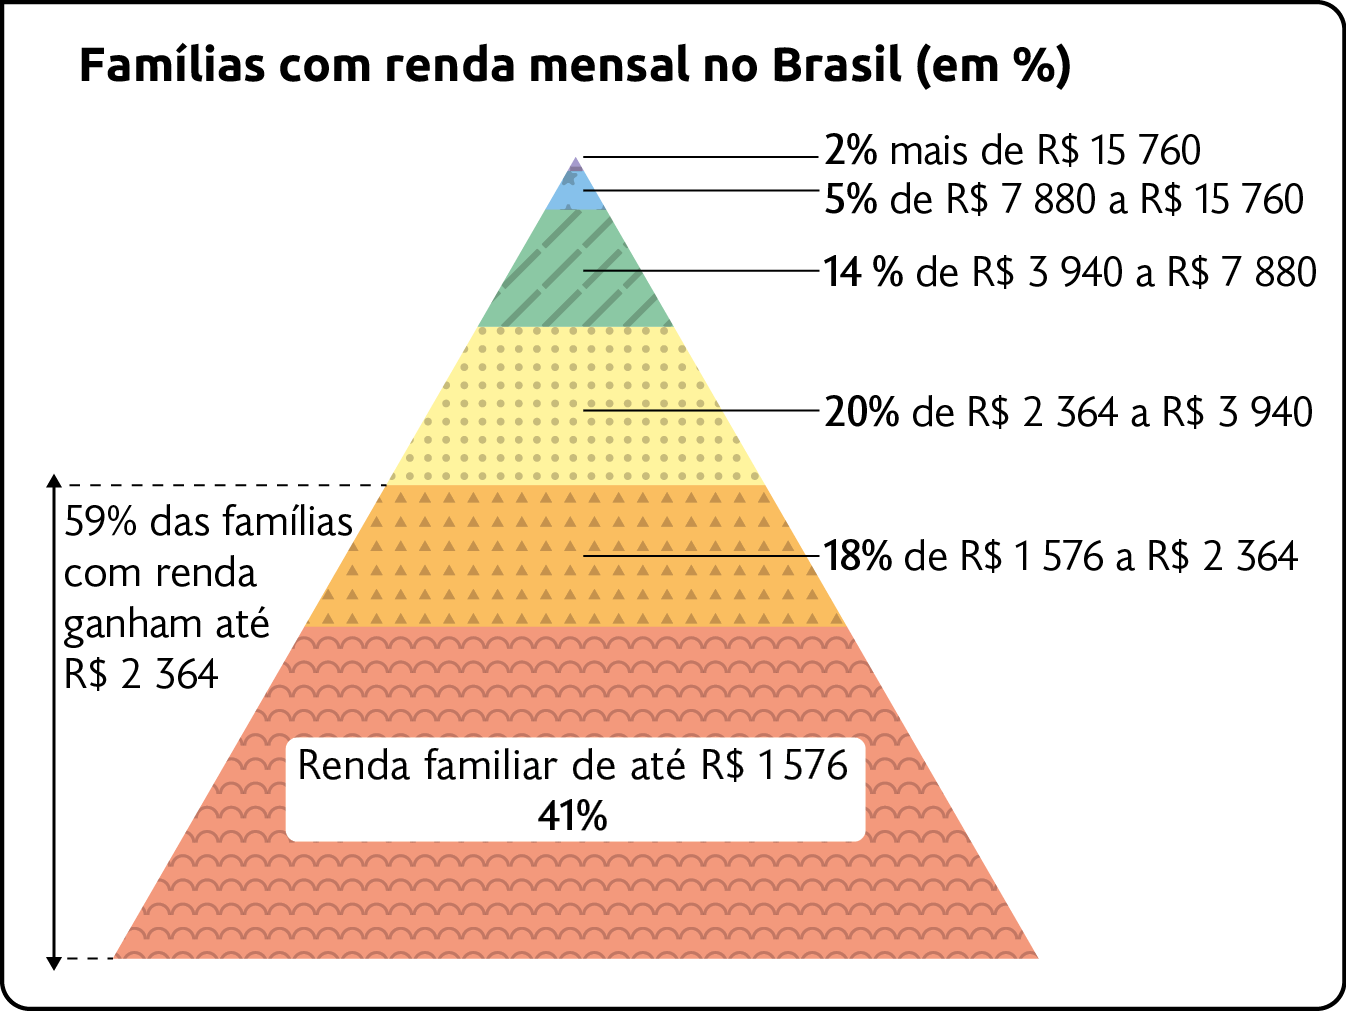 Esquema. Distribuição de renda e desigualdade social no Brasil (2015). Famílias com renda mensal no Brasil (em porcentagem). Ilustração de uma pirâmide dividida em camadas. Da base para o topo, estão: 41 por cento – Renda familiar de até 1576 reais. 18 por cento – de 1576 a 2364 reais. Ligada a essas duas camadas está a informação: 59 por cento das famílias com renda ganham até 2364 reais. Na camada seguinte, 20 por cento – de 2364 a 3940 reais. 14 por cento – de 3940 a 7880 reais. 5 por cento – de 7880 a 15760 reais. No topo: 2 por cento – mais de 15760 reais.